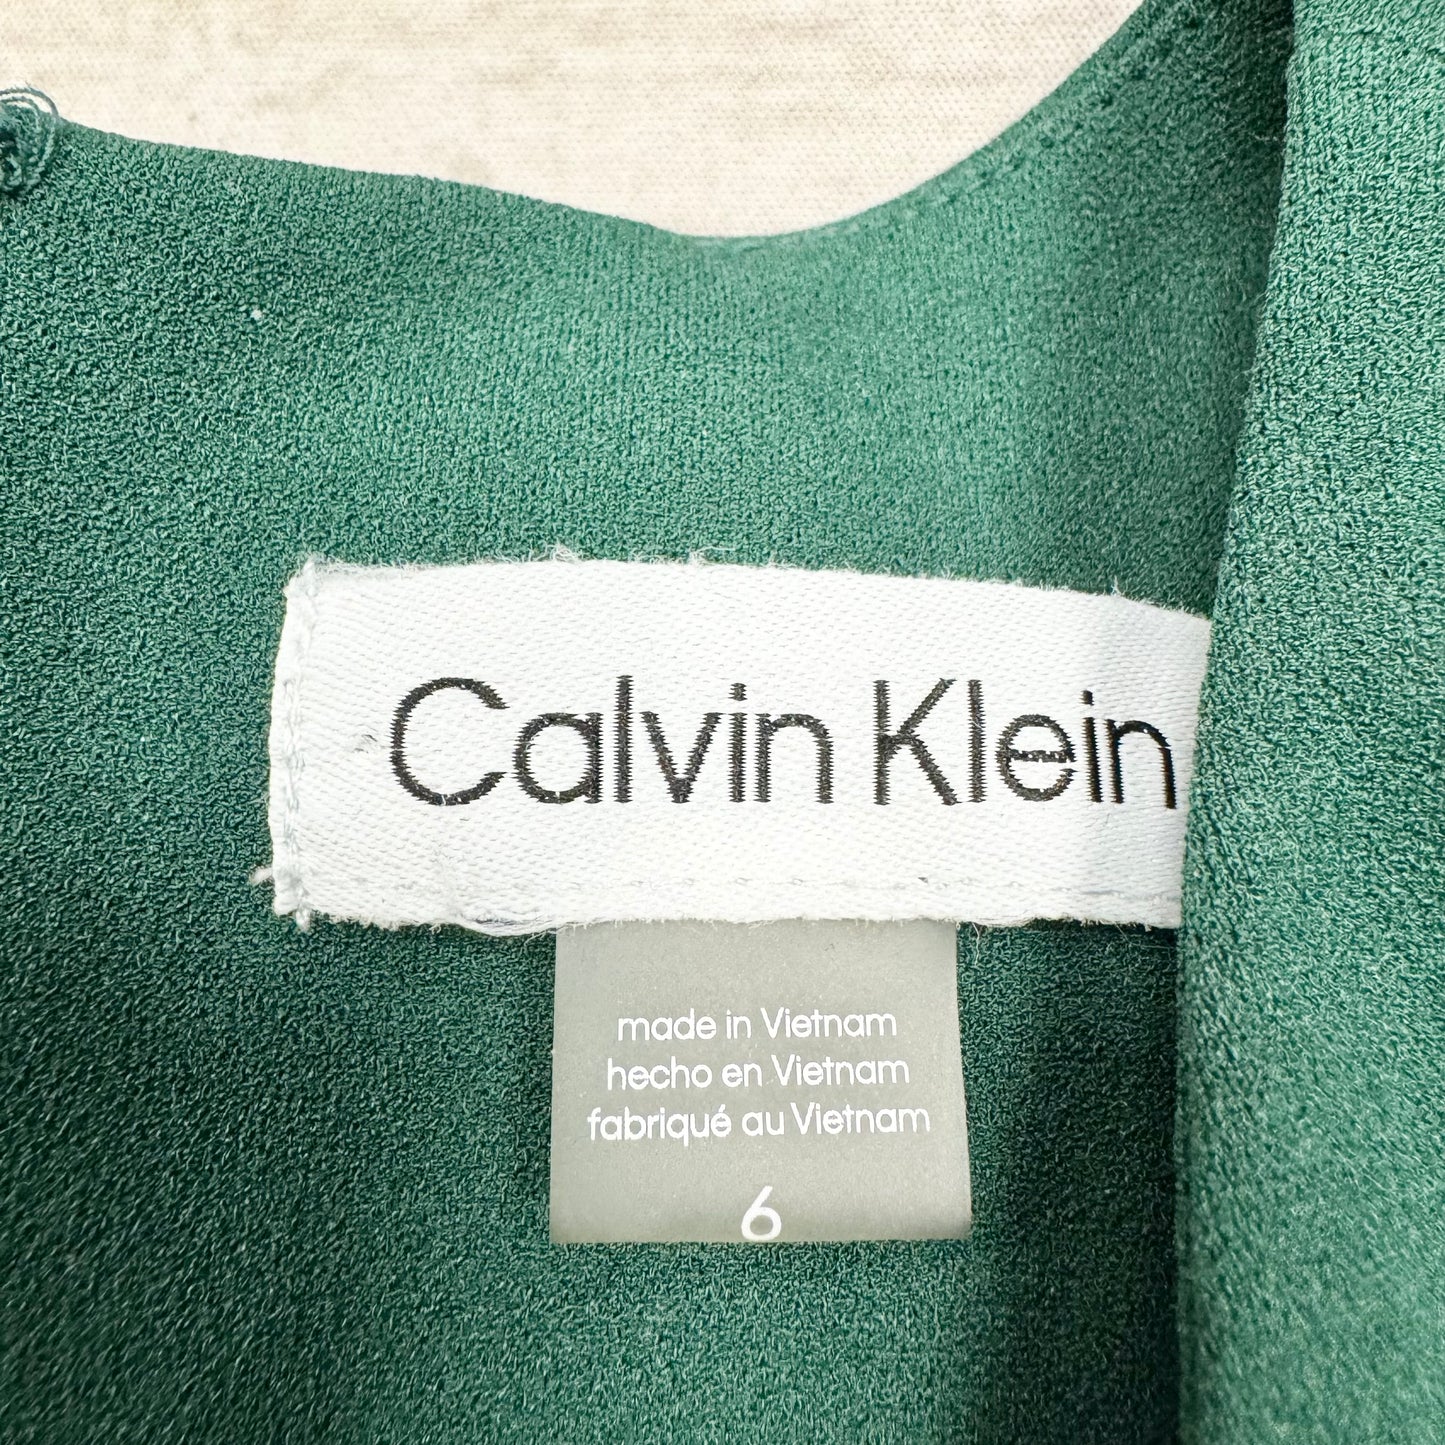 Dress Work By Calvin Klein  Size: S